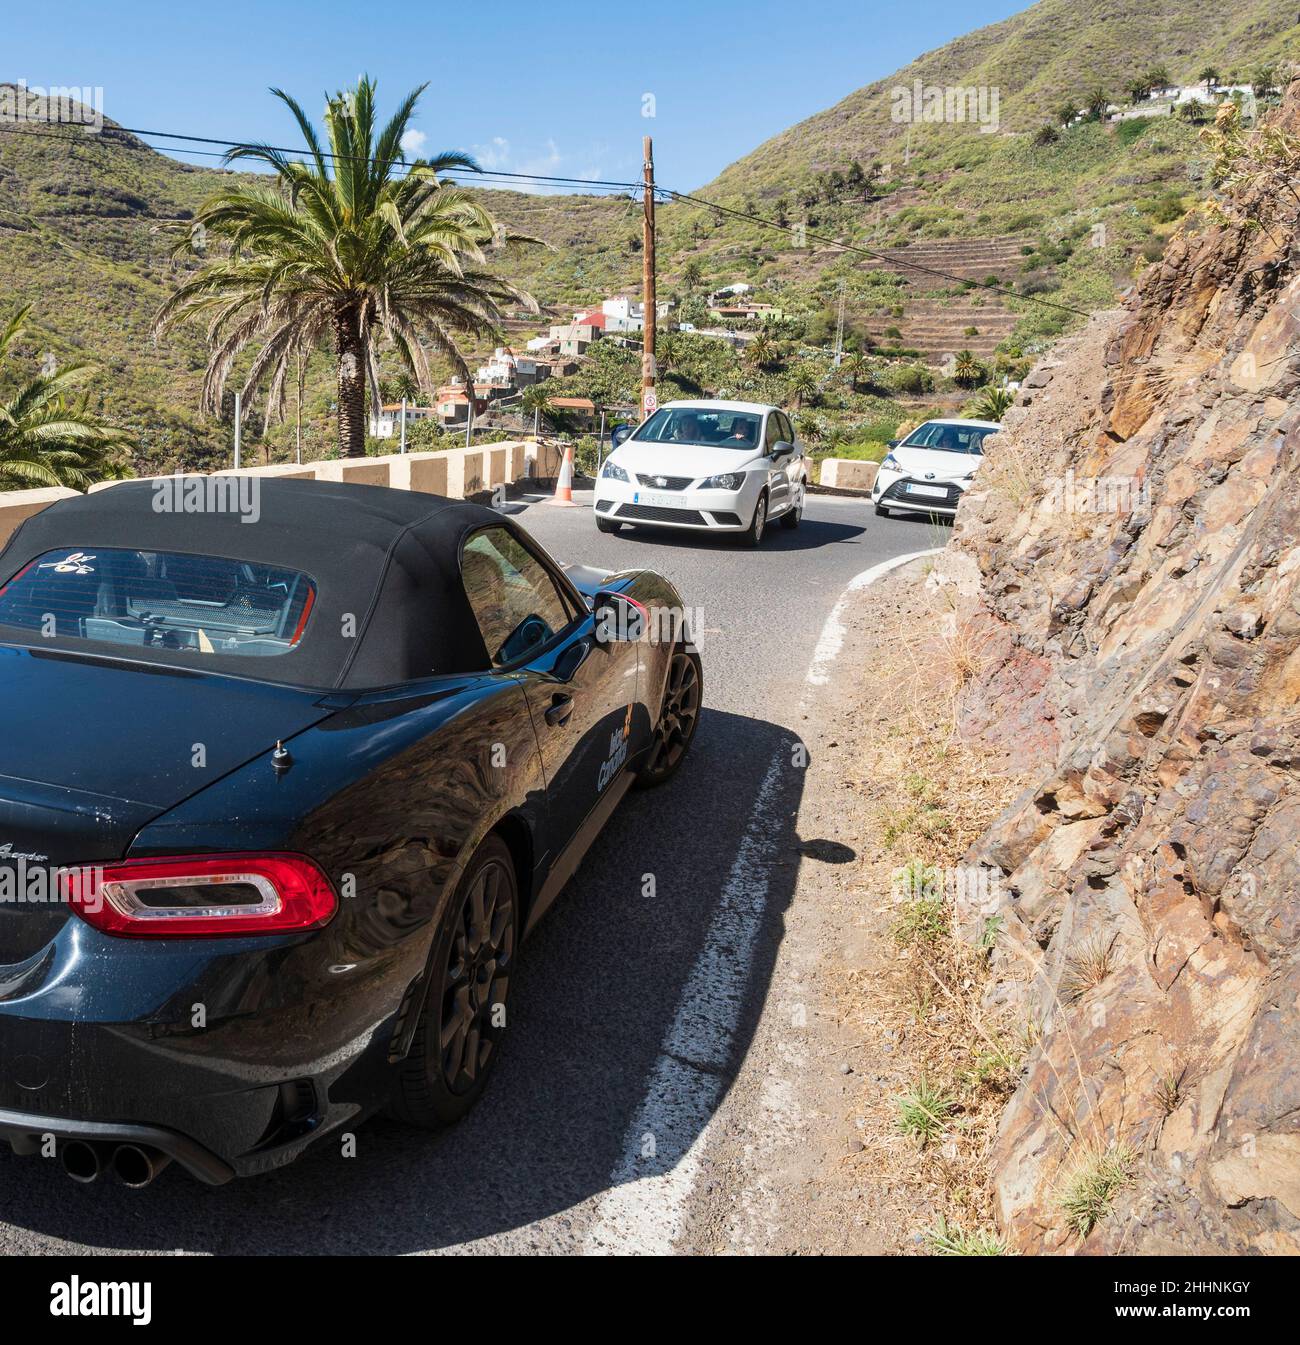 Pueblo de Masca, Montañas Teno, Tenerife, Islas Canarias. Es difícil aparcar y pasar por una carretera estrecha. Foto de stock